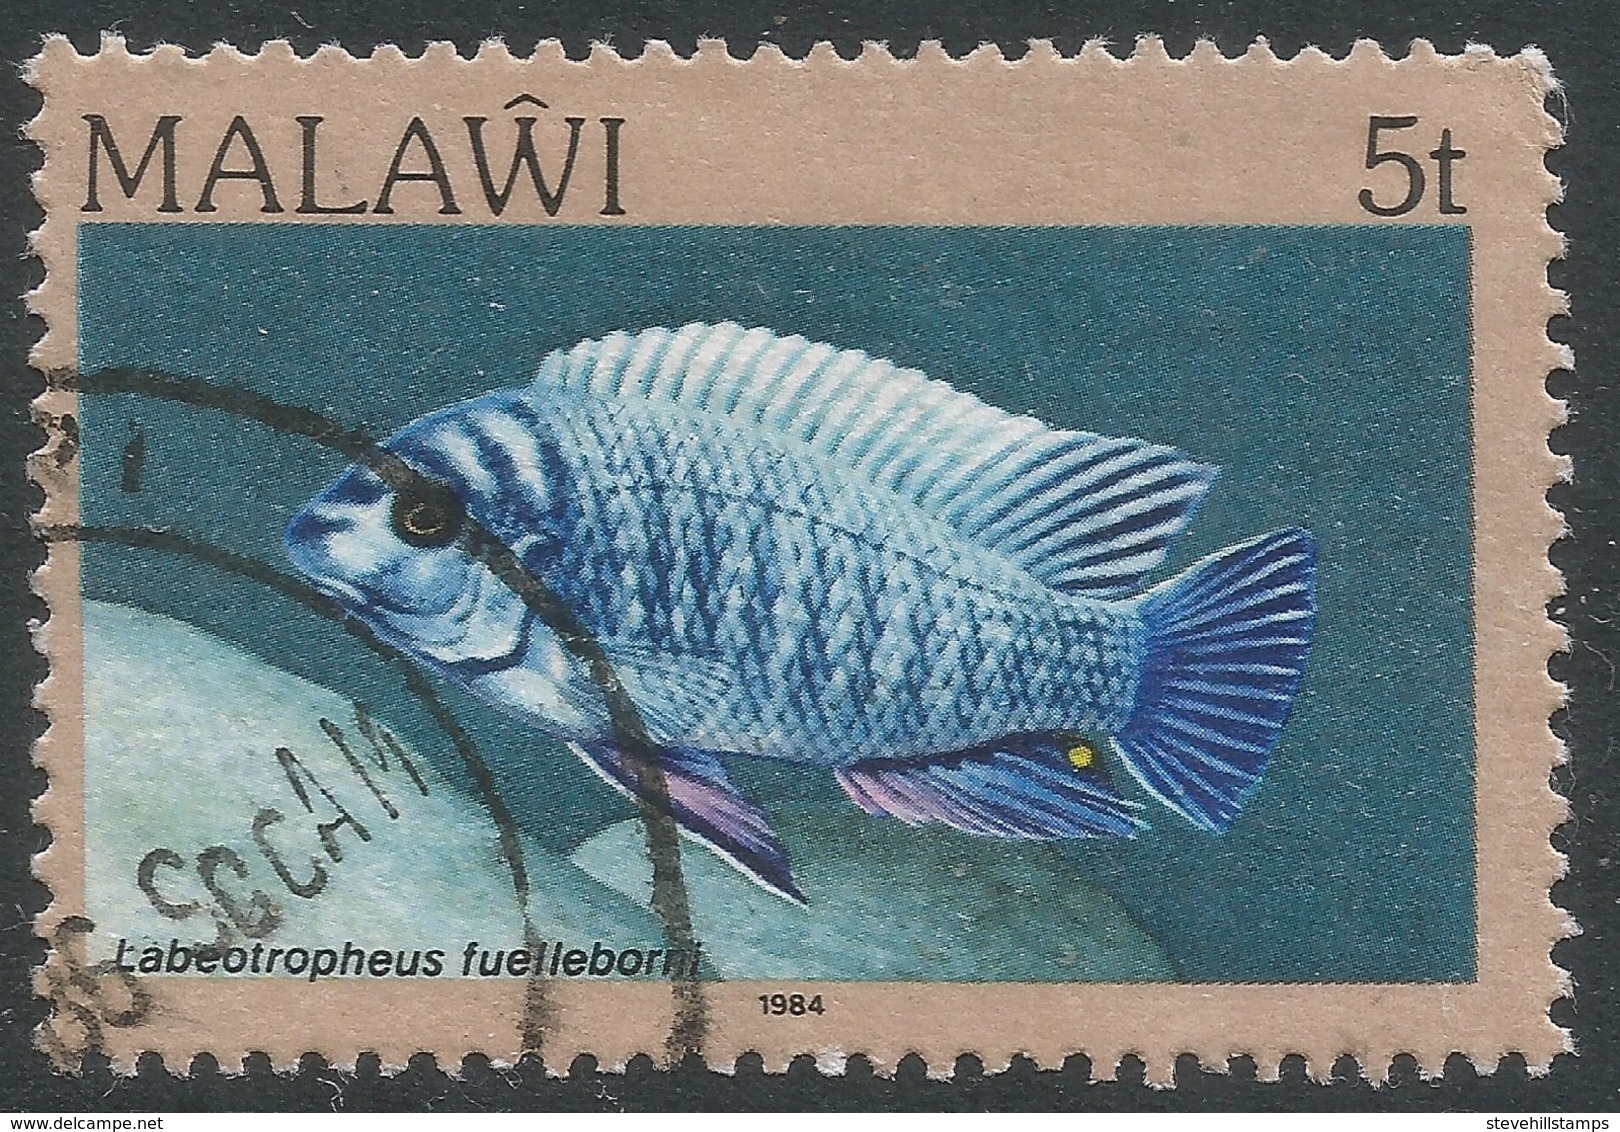 Malawi 1984 Fish. 5t Used. SG 690 - Malawi (1964-...)